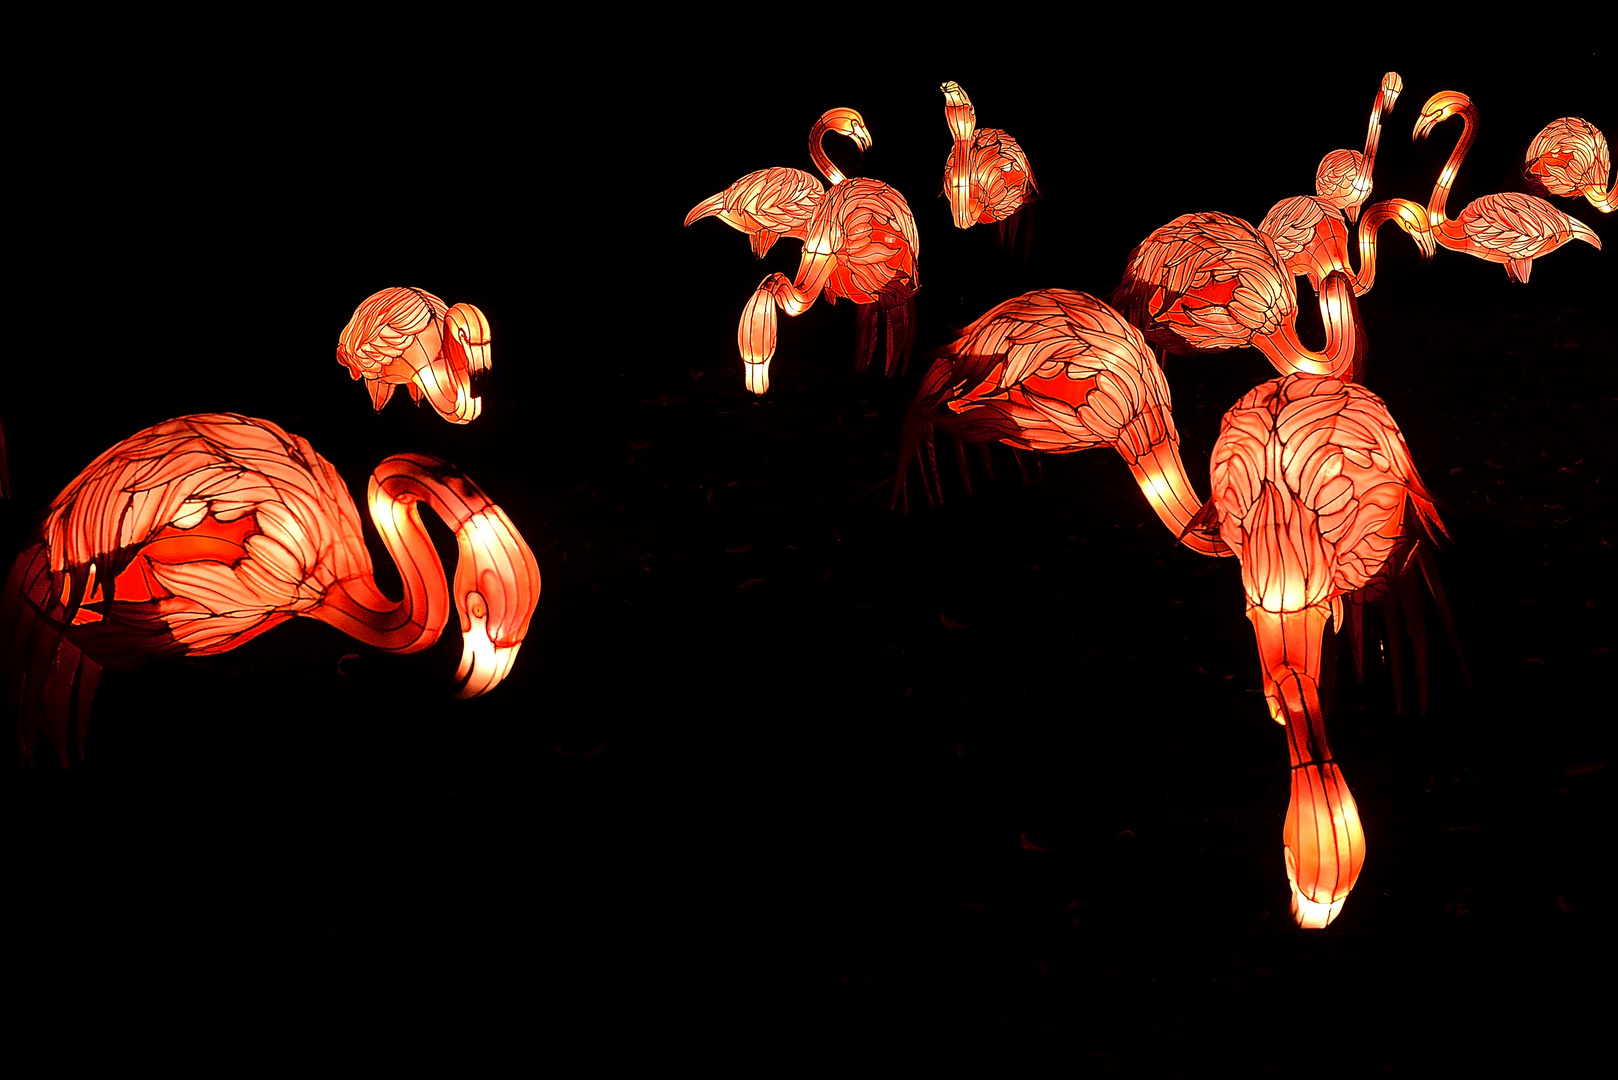 China Light Festival - Flamingos